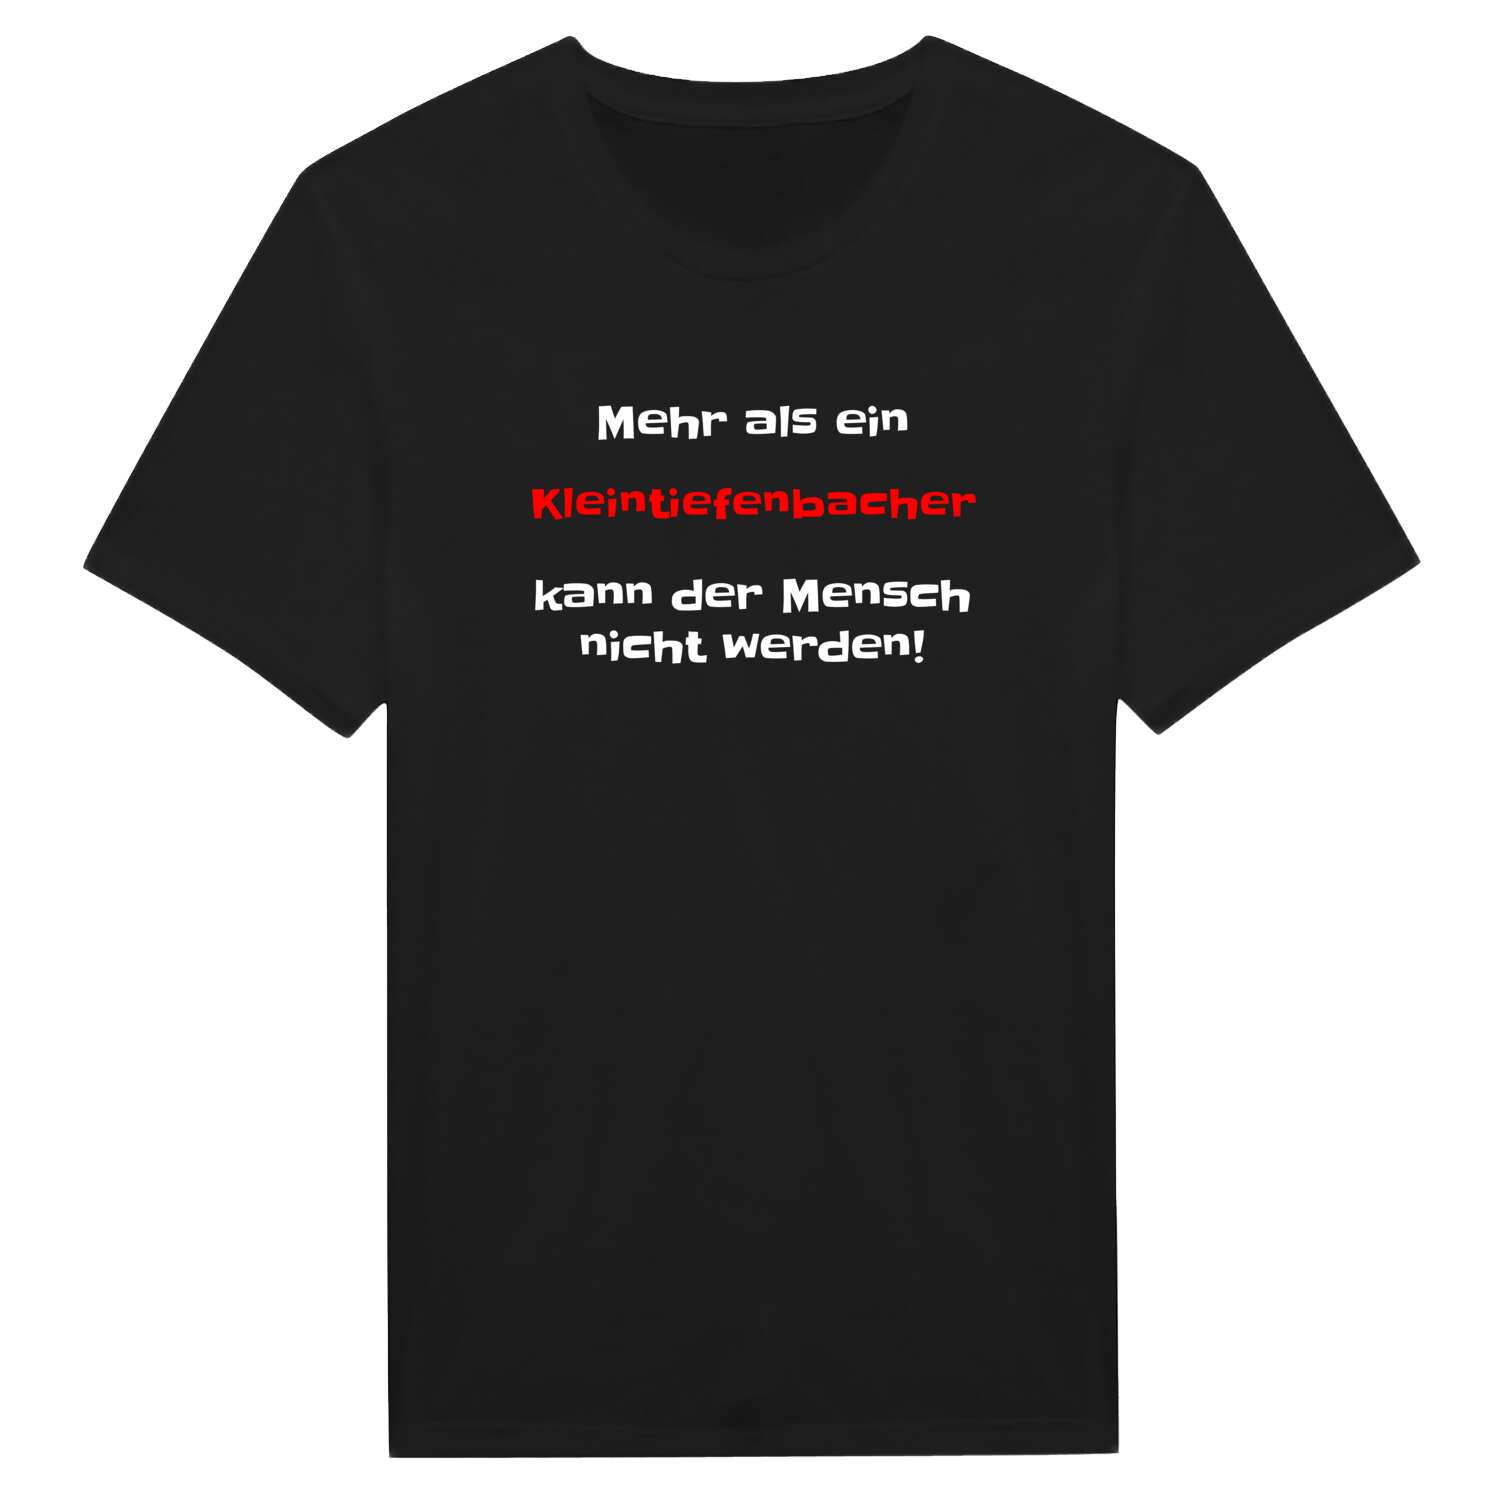 Kleintiefenbach T-Shirt »Mehr als ein«